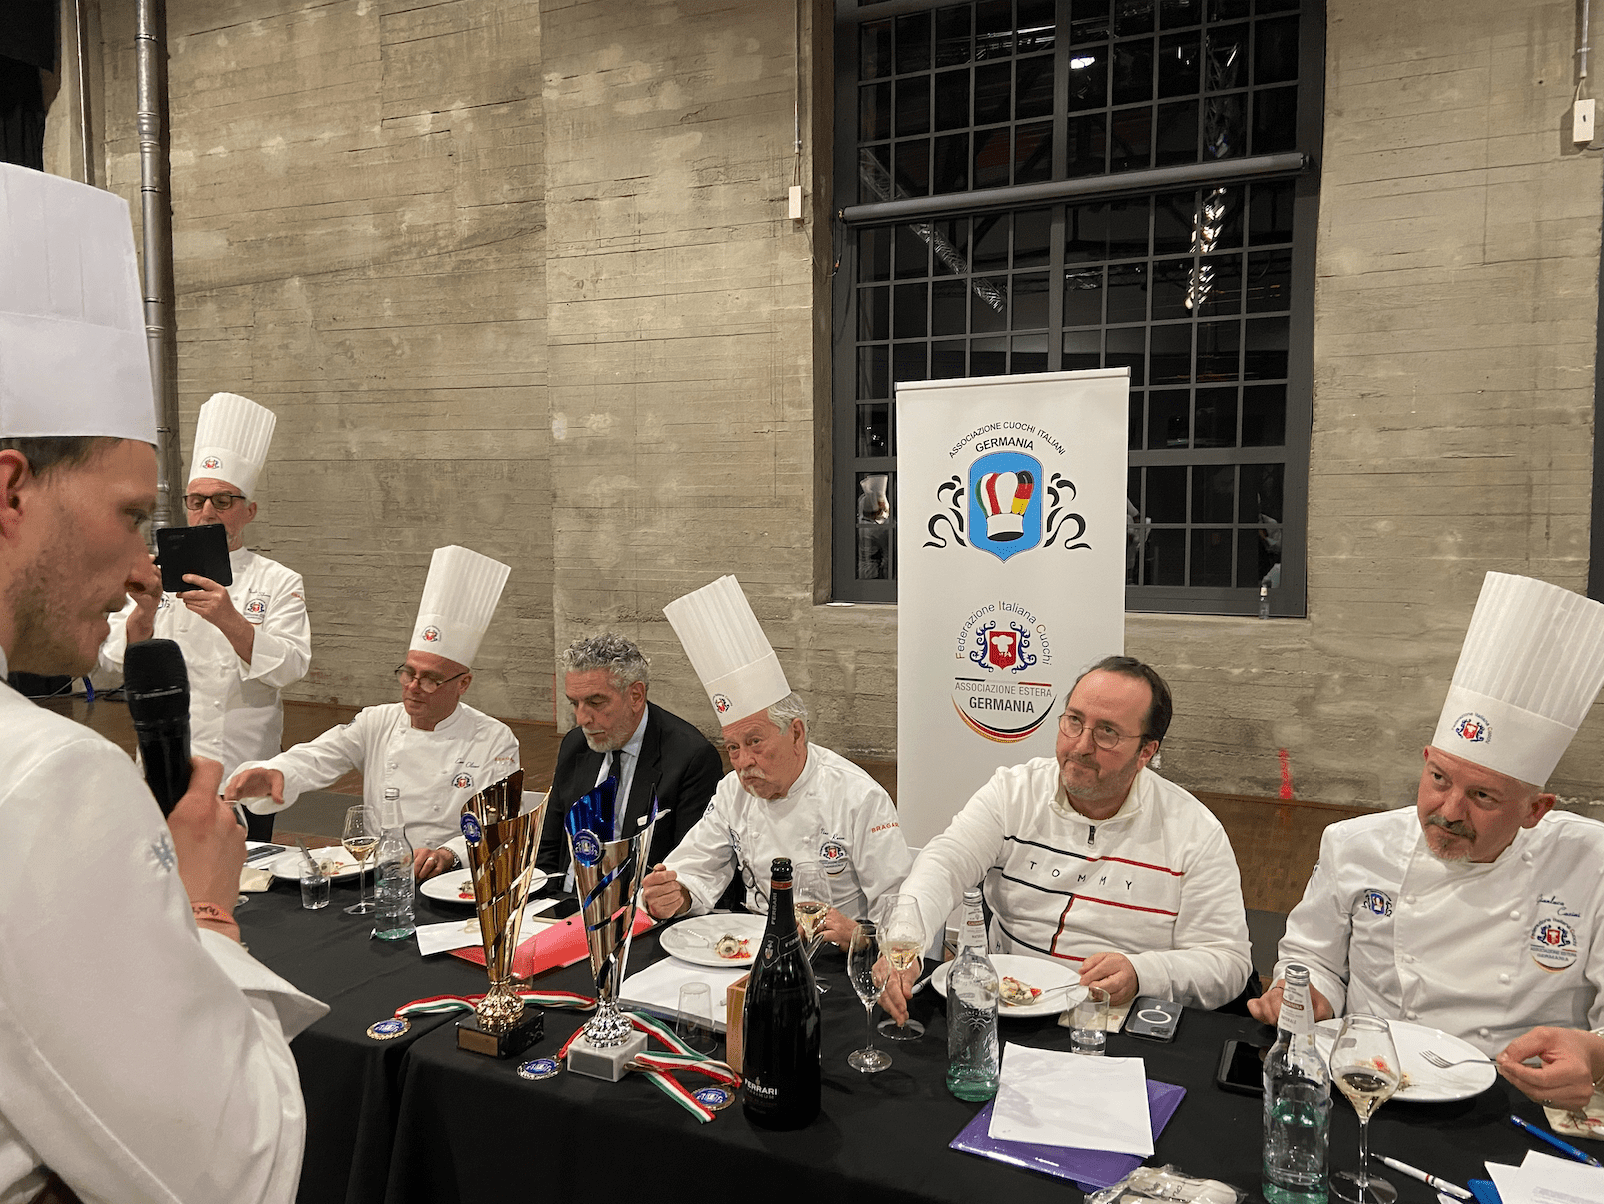 1ère édition de The Italian Show : la cuisine italienne en vedette à Paris le 17 avril